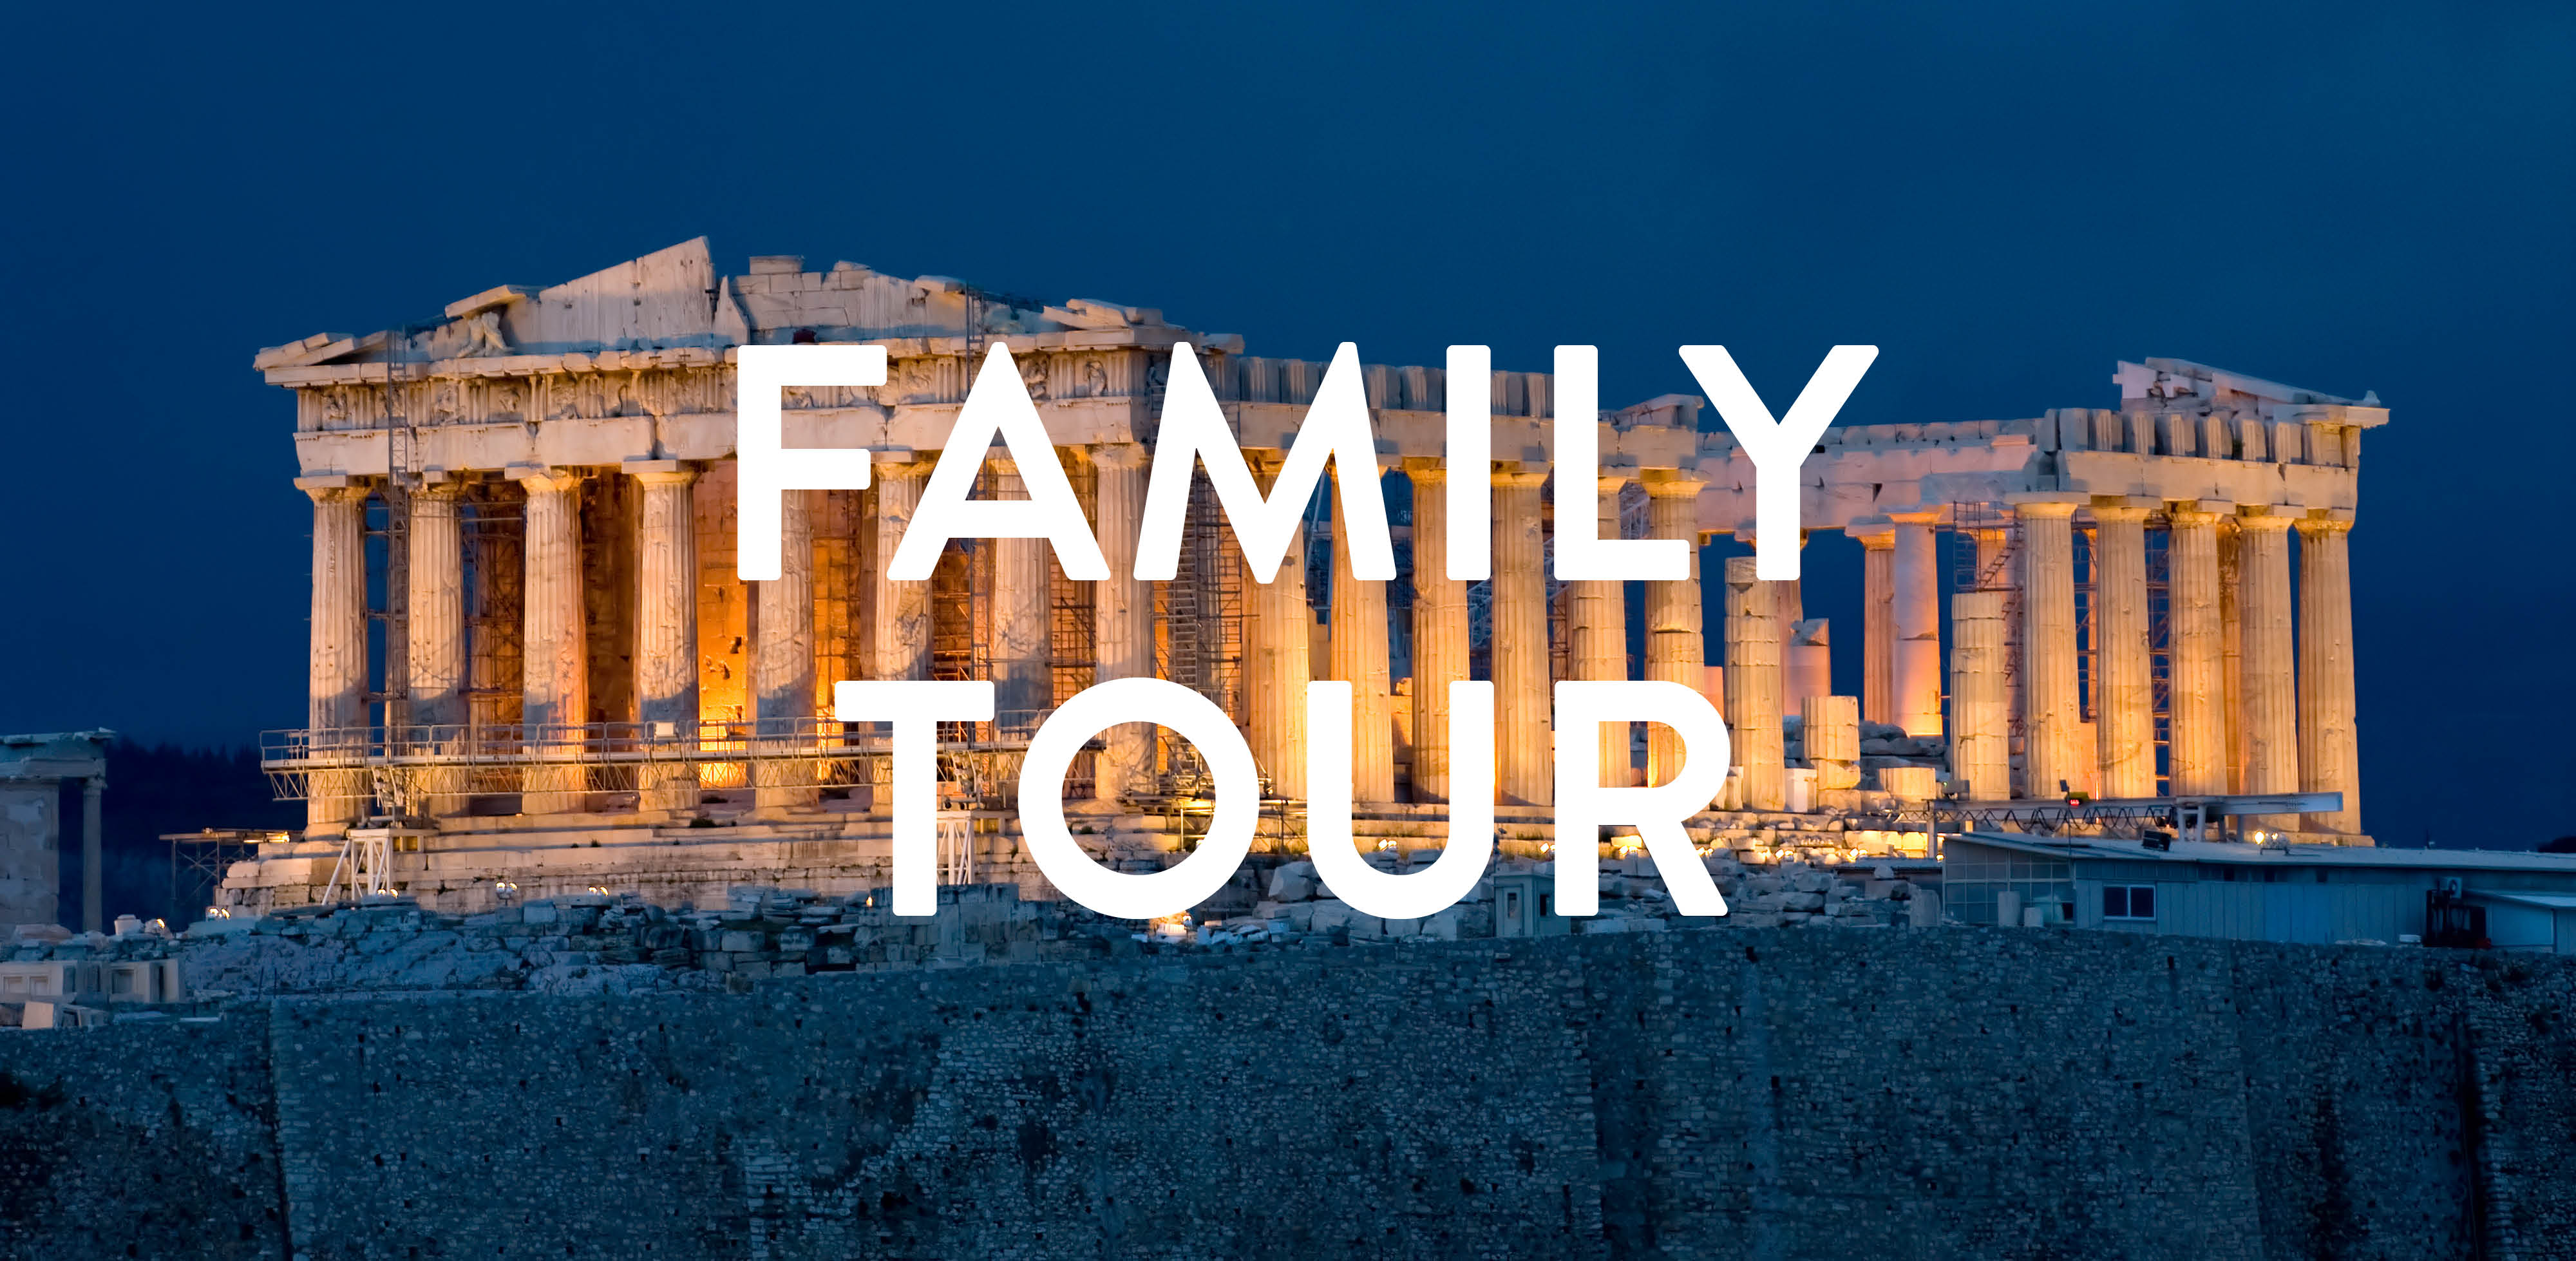 Family Acropolis Tour